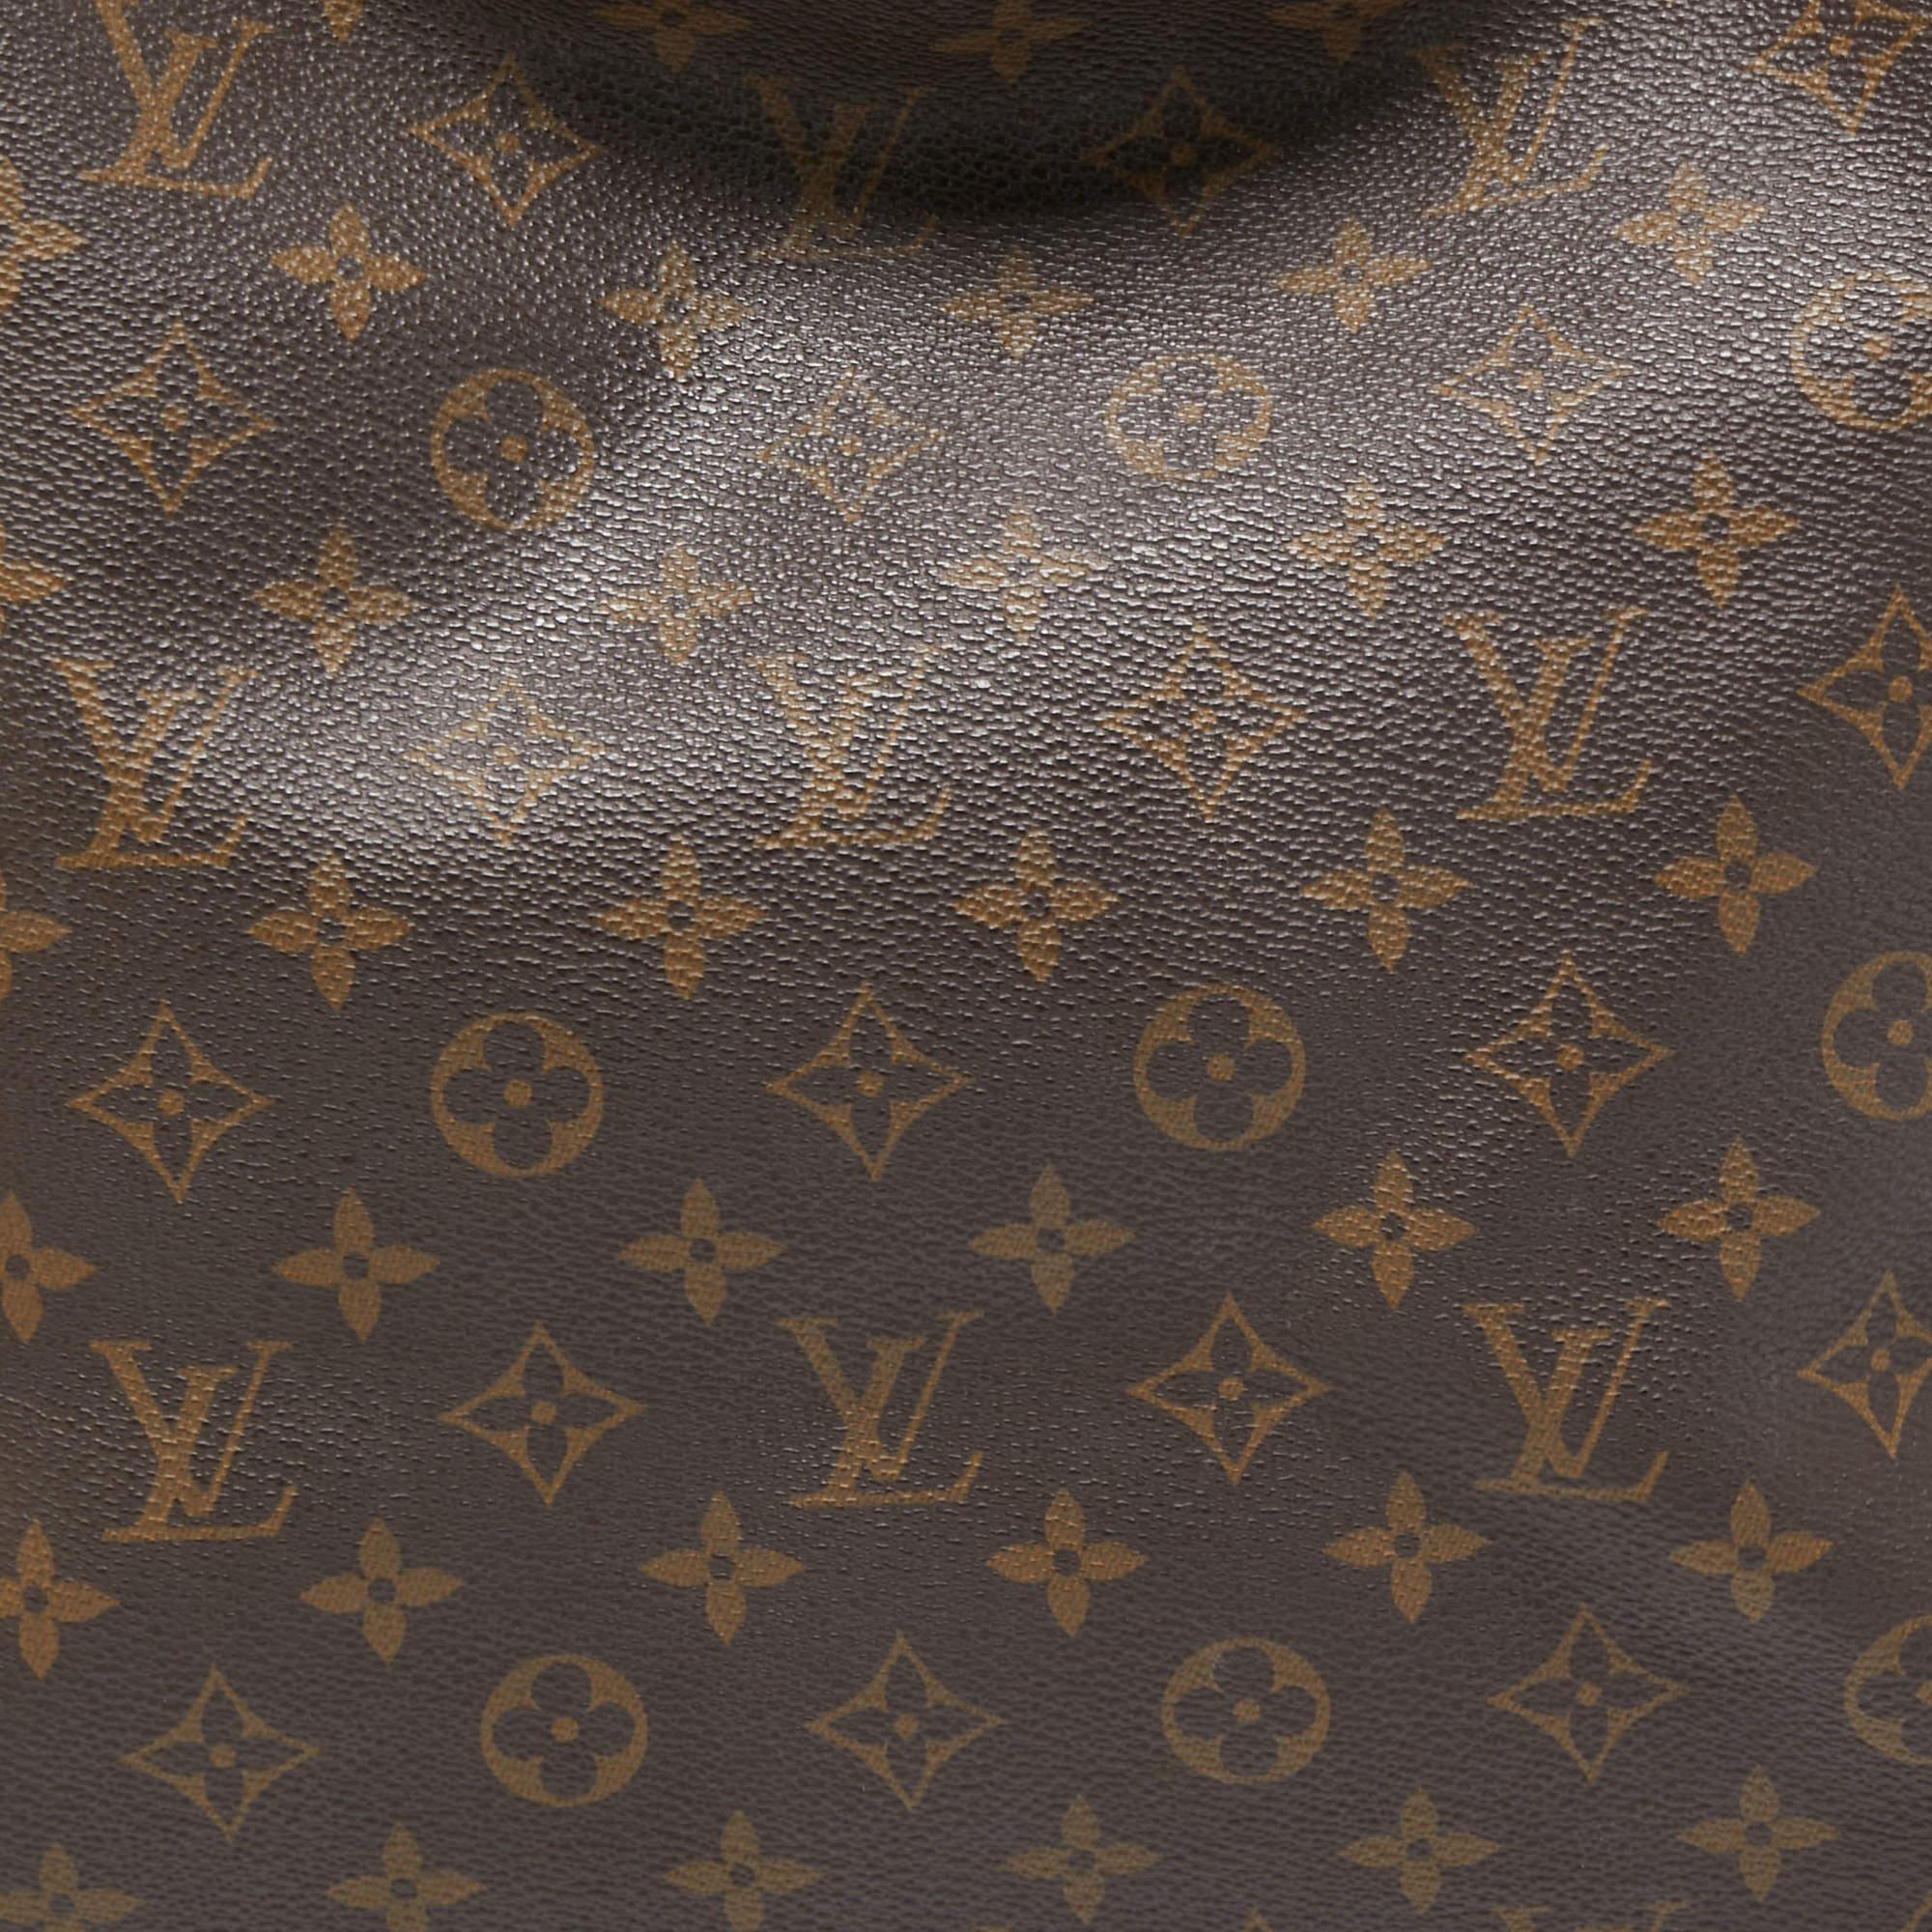 Women's Louis Vuitton Monogram Canvas Artsy MM Bag For Sale